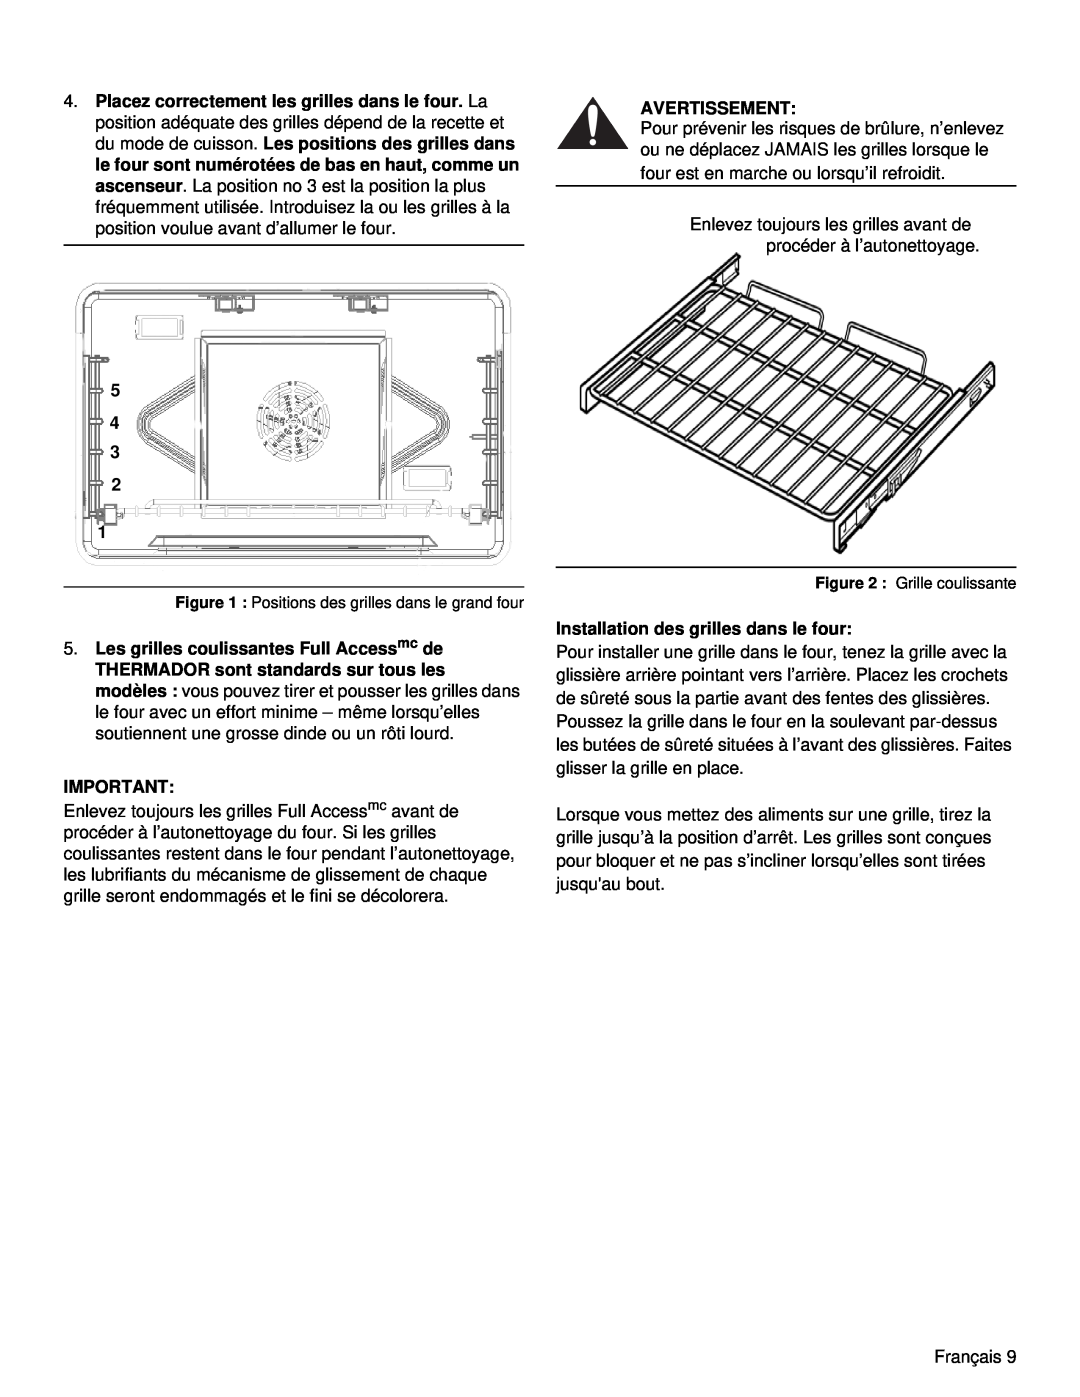 Thermador PRD48, PRD36 manual 5 4 3 2 1, Avertissement, Installation des grilles dans le four 